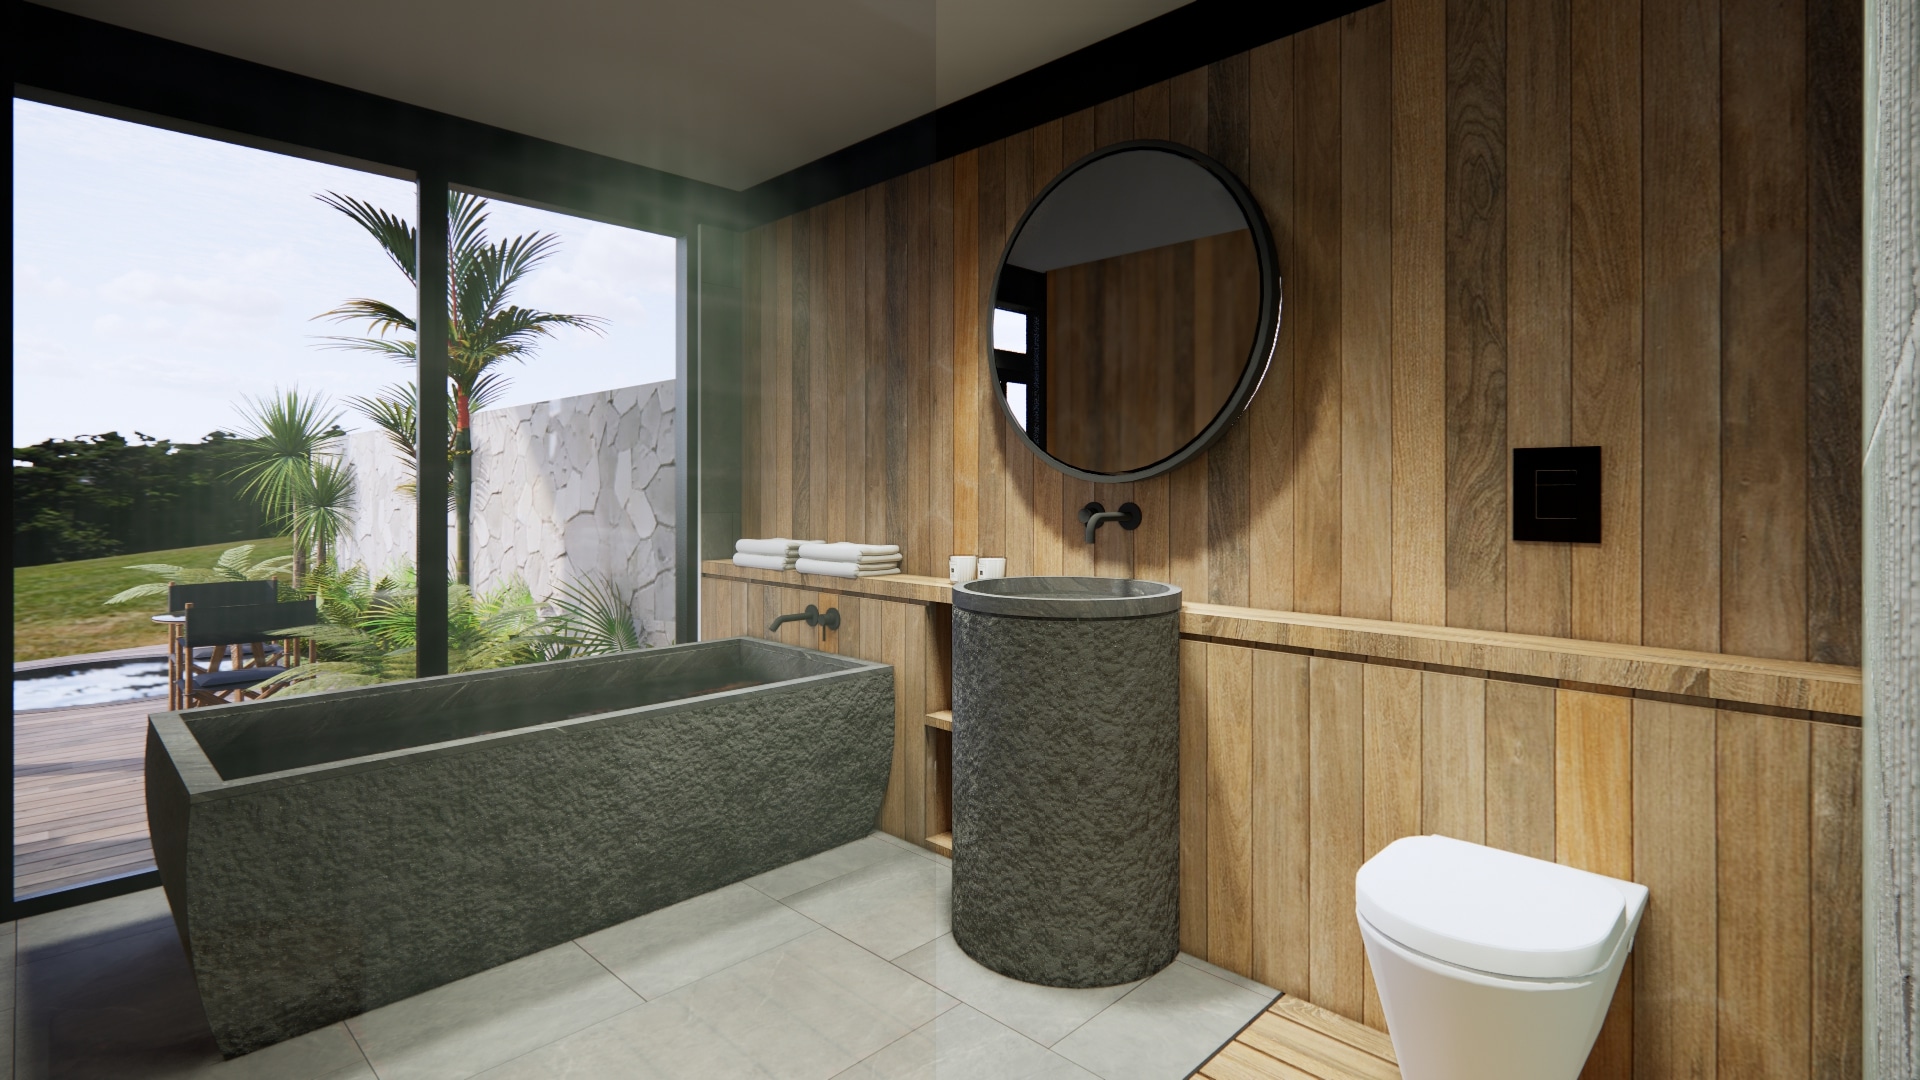 Design Assembly - Bingin Cabins - Bali Architect - Interior Design - Bali Villa - Bathroom